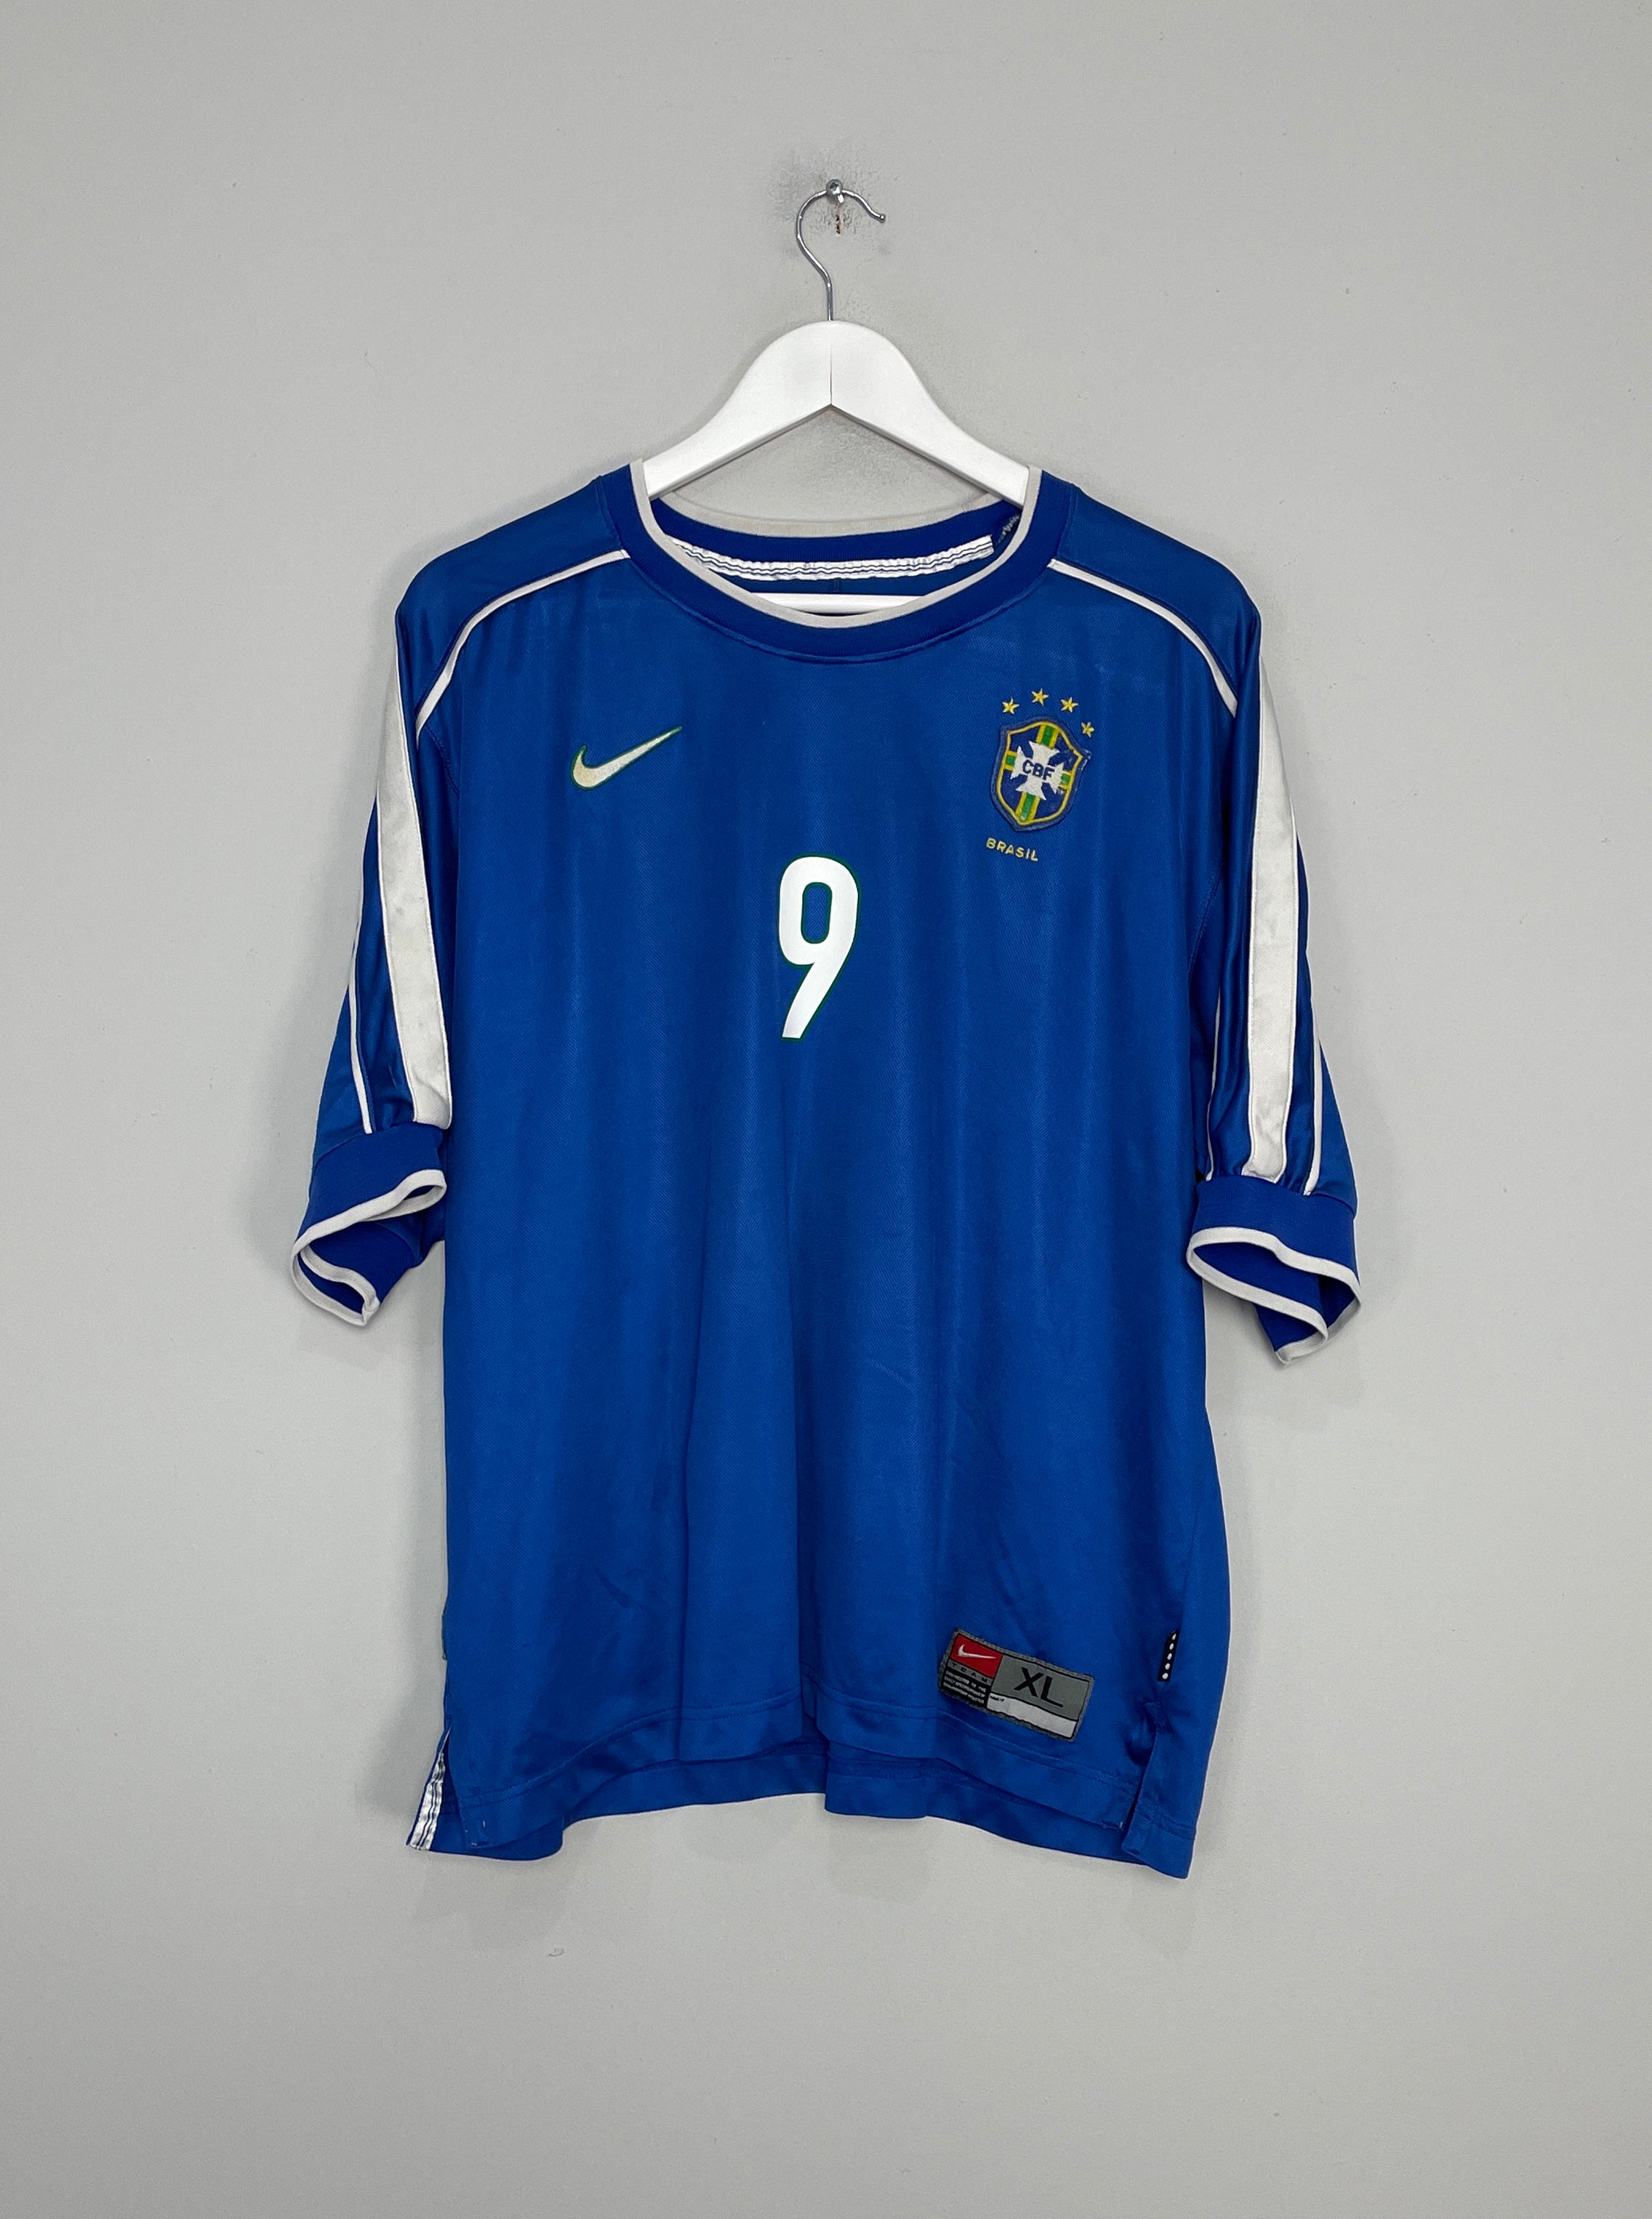 brazil 98 shirt